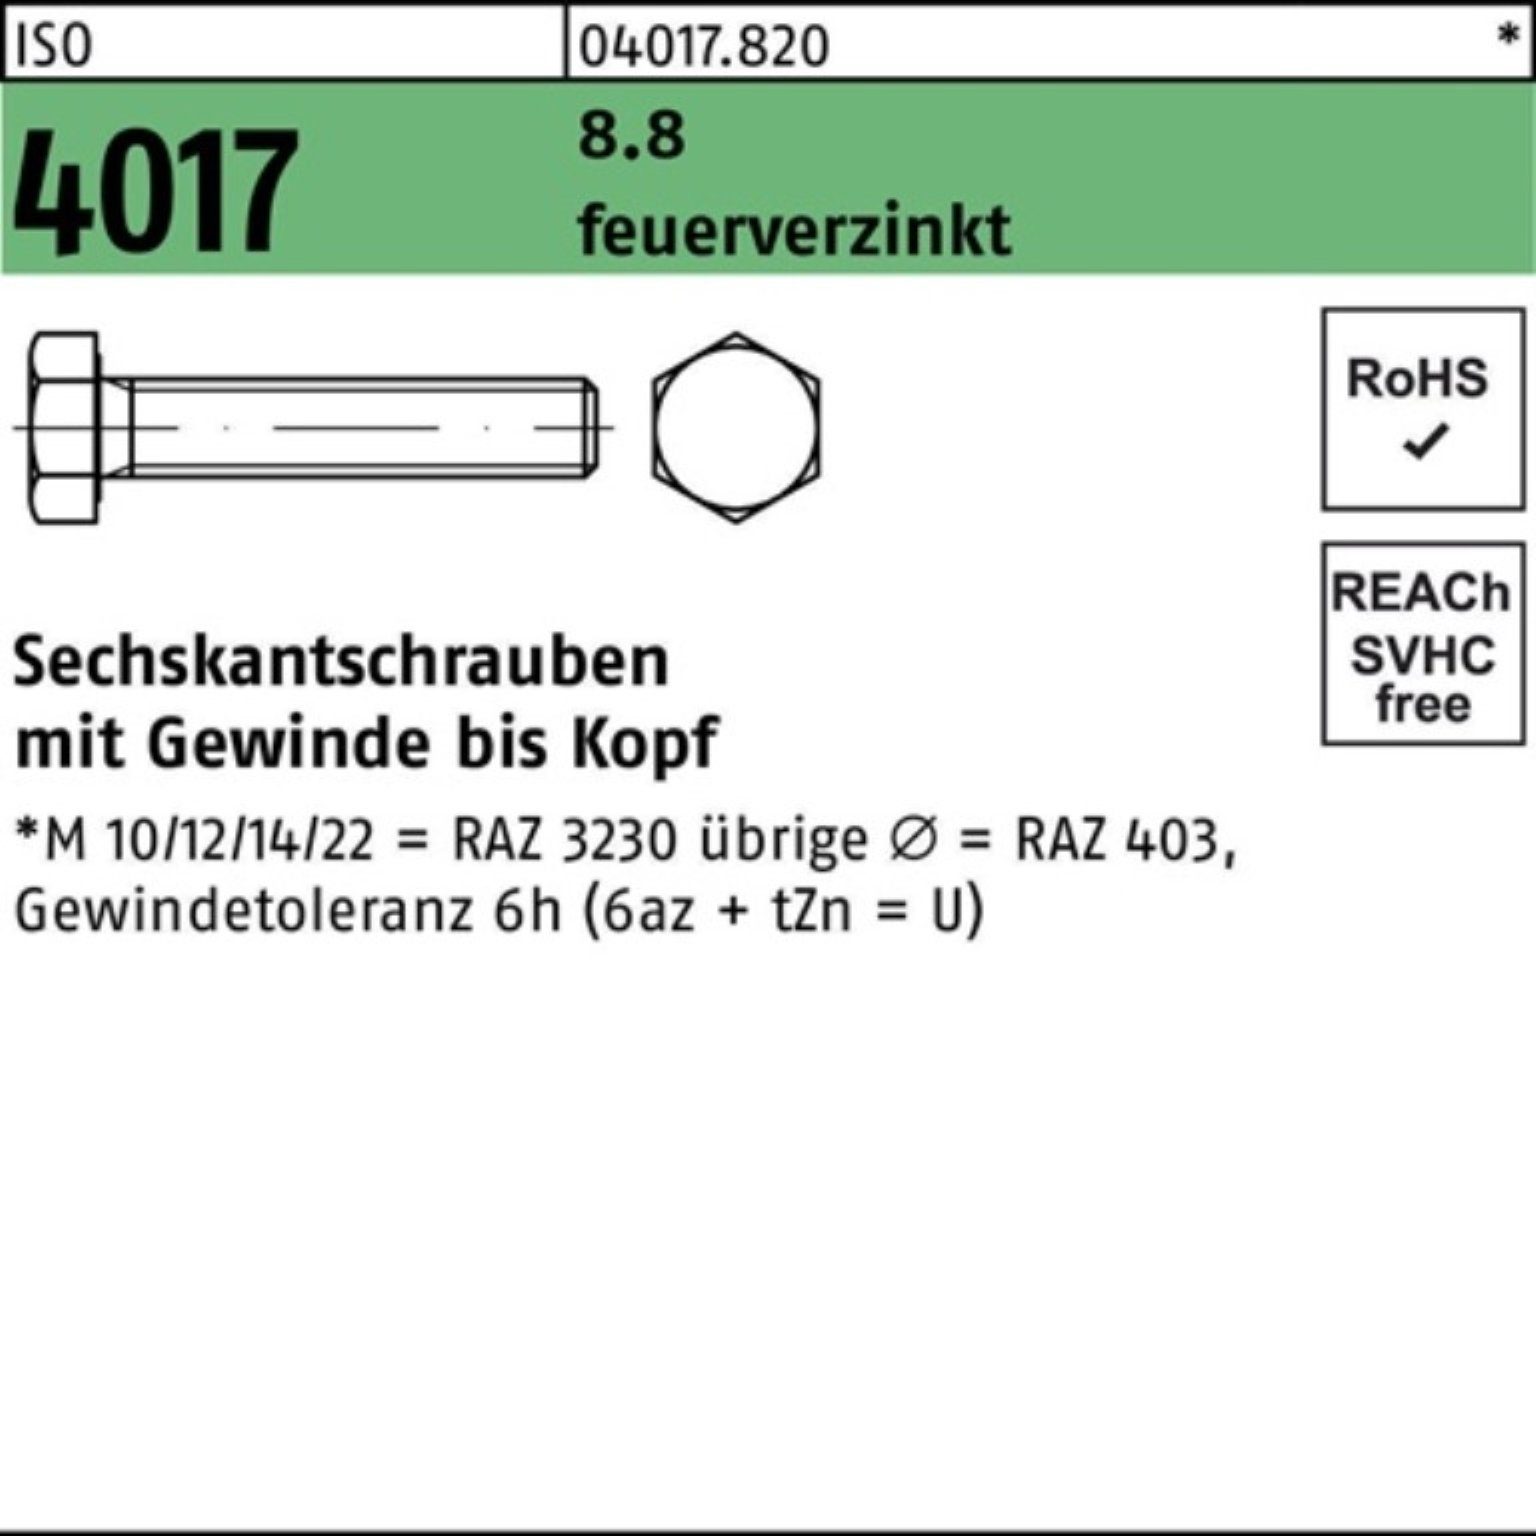 Bufab Pack 200 feuerverz. 8.8 4017 25 Sechskantschraube VG ISO Sechskantschraube 200er St M8x